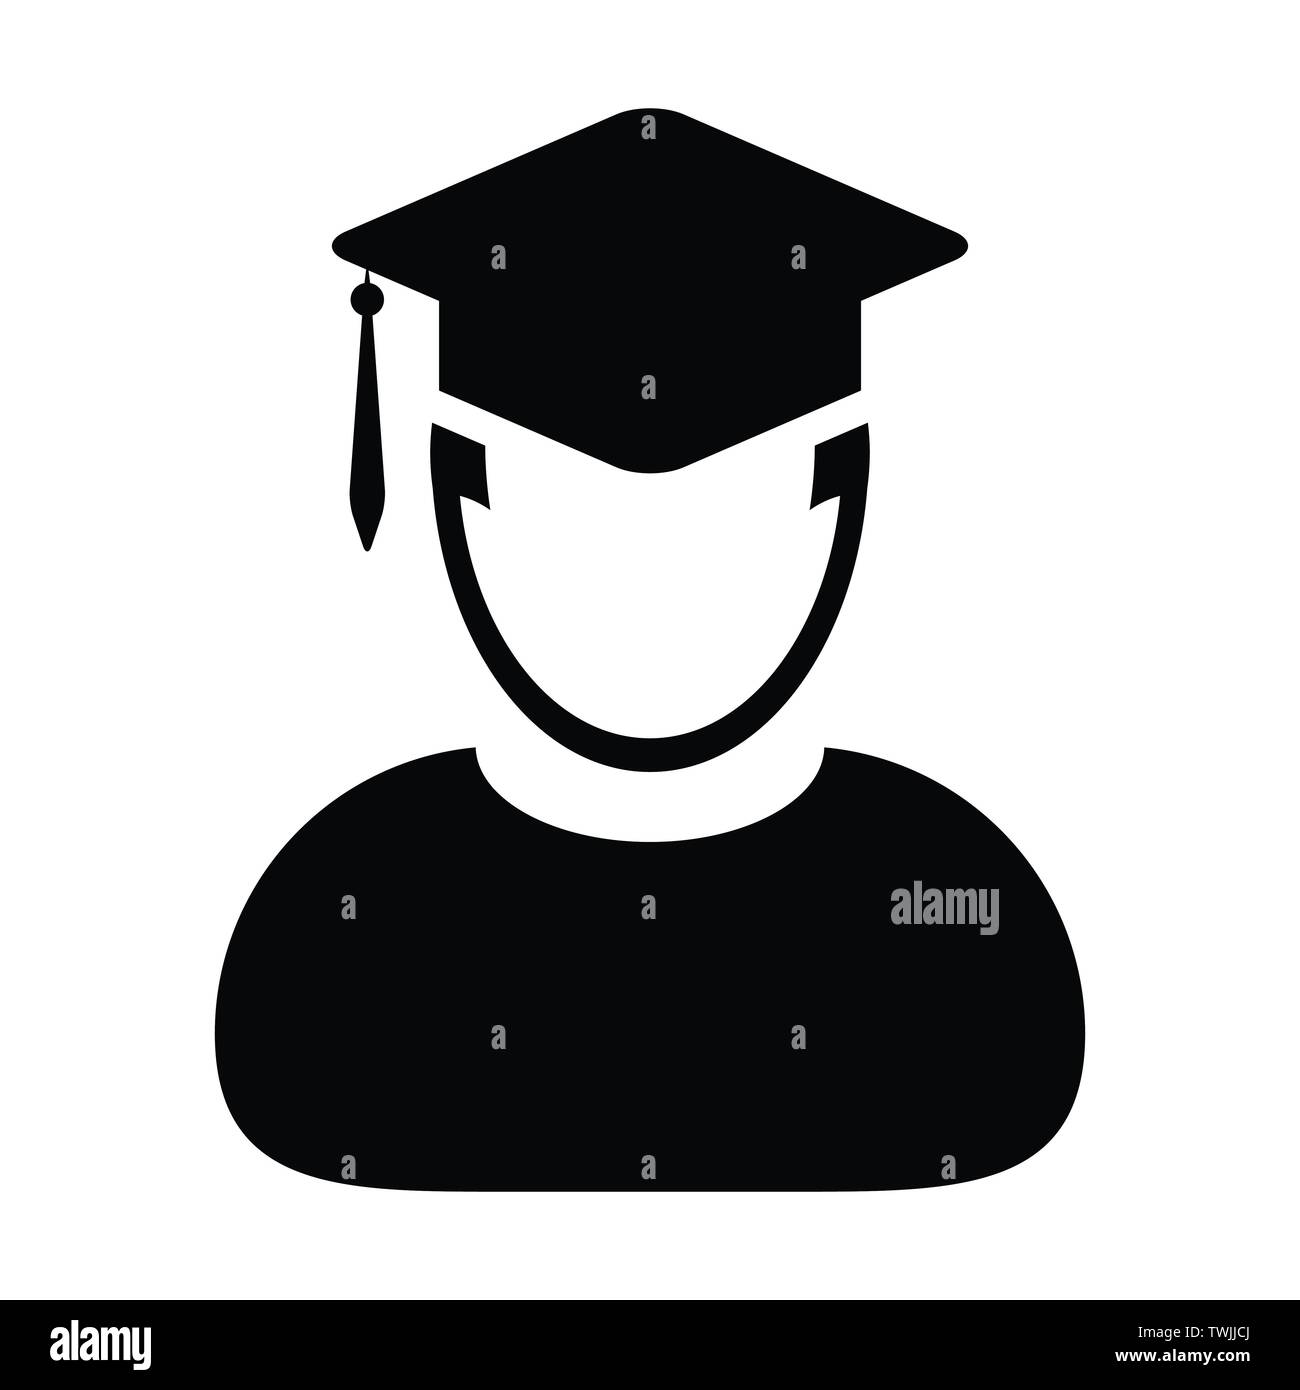 Student Icon Vektor männlich Person Profil Avatar mit Mörtel Brett Hutsymbol für Schule, Hochschule und Universität Abschluss Abschluss in flacher Farbe Glyphe Stock Vektor